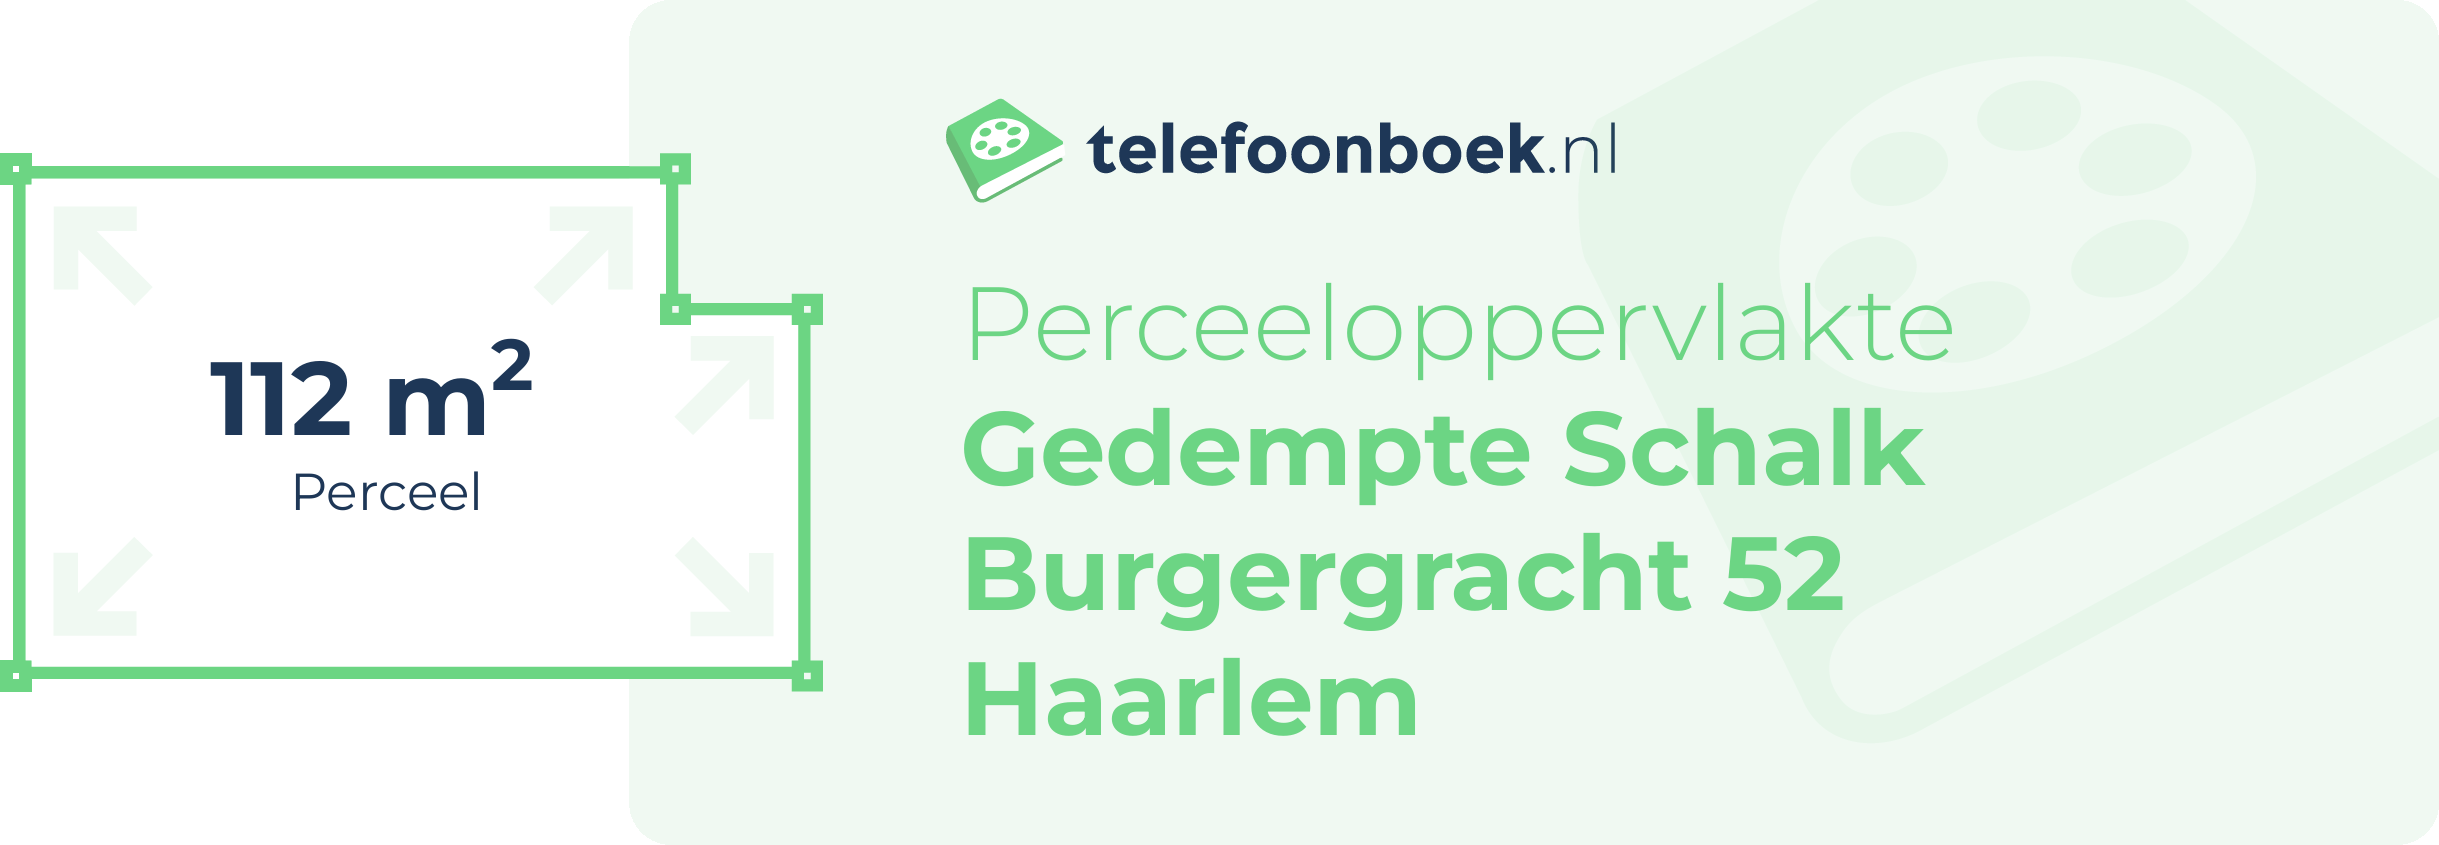 Perceeloppervlakte Gedempte Schalk Burgergracht 52 Haarlem